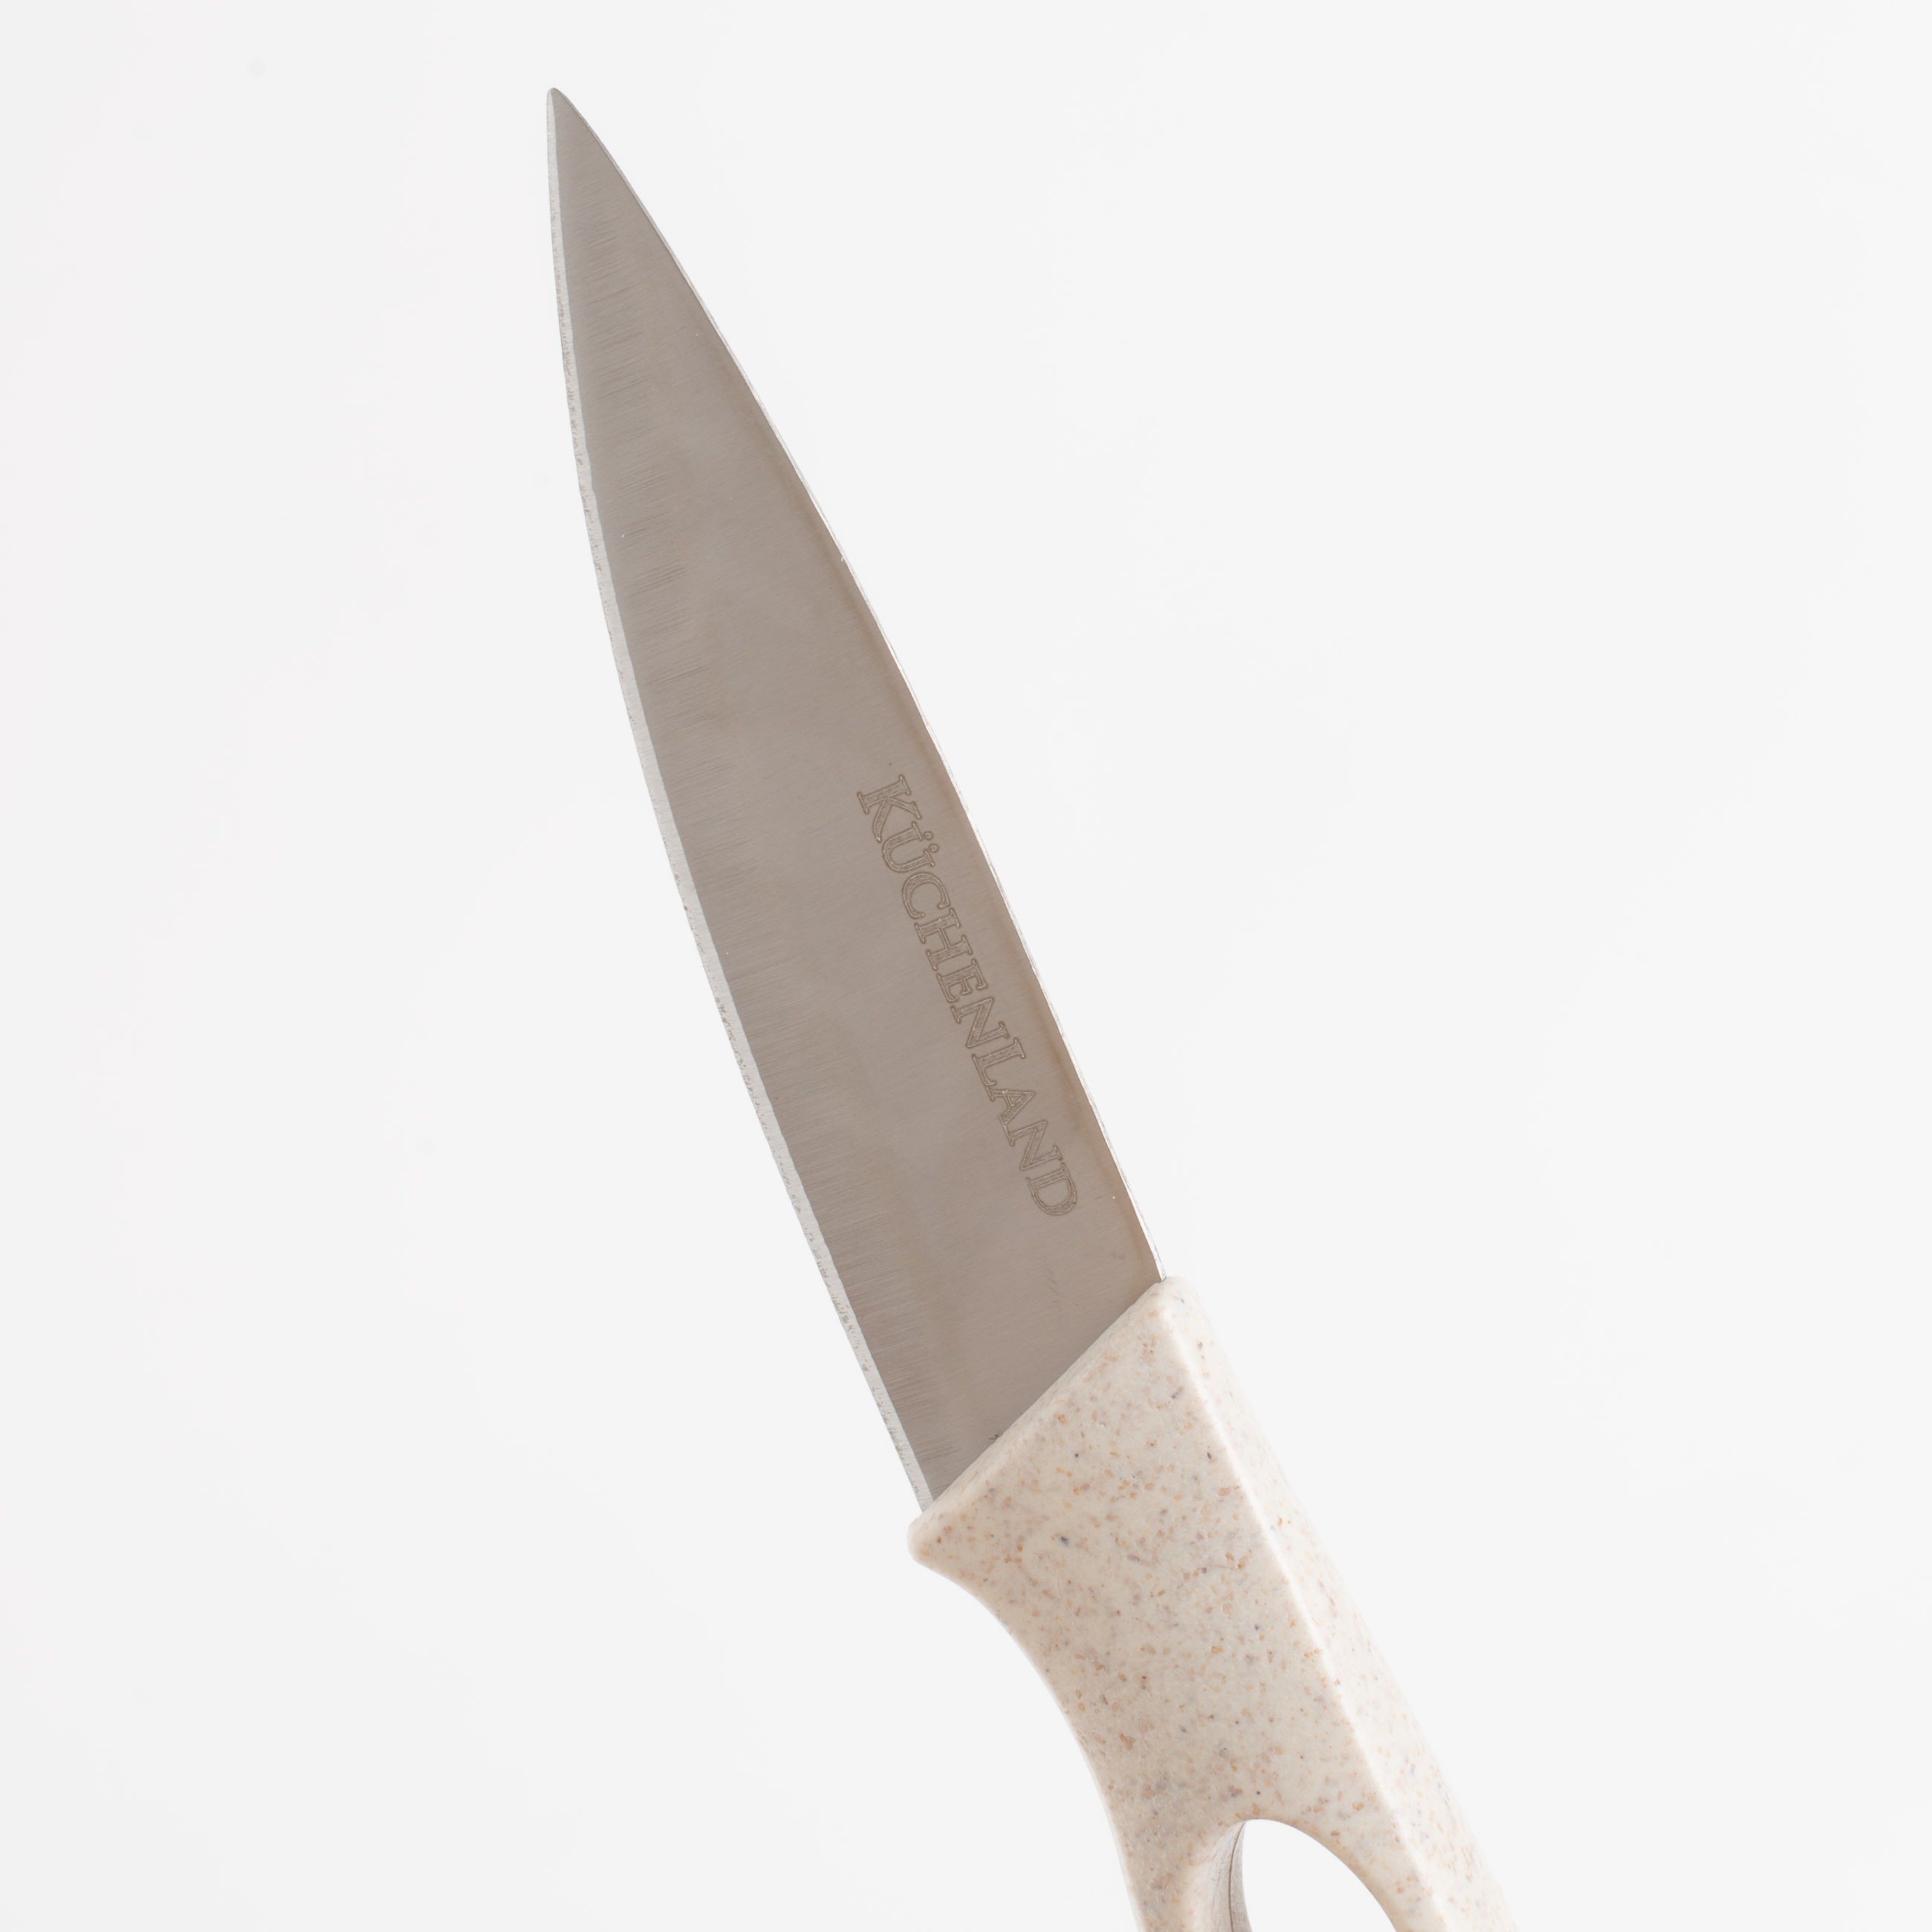 Нож для чистки овощей, 9 см, с чехлом, сталь/пластик, бежевый, в крапинку, Soft speckled изображение № 3